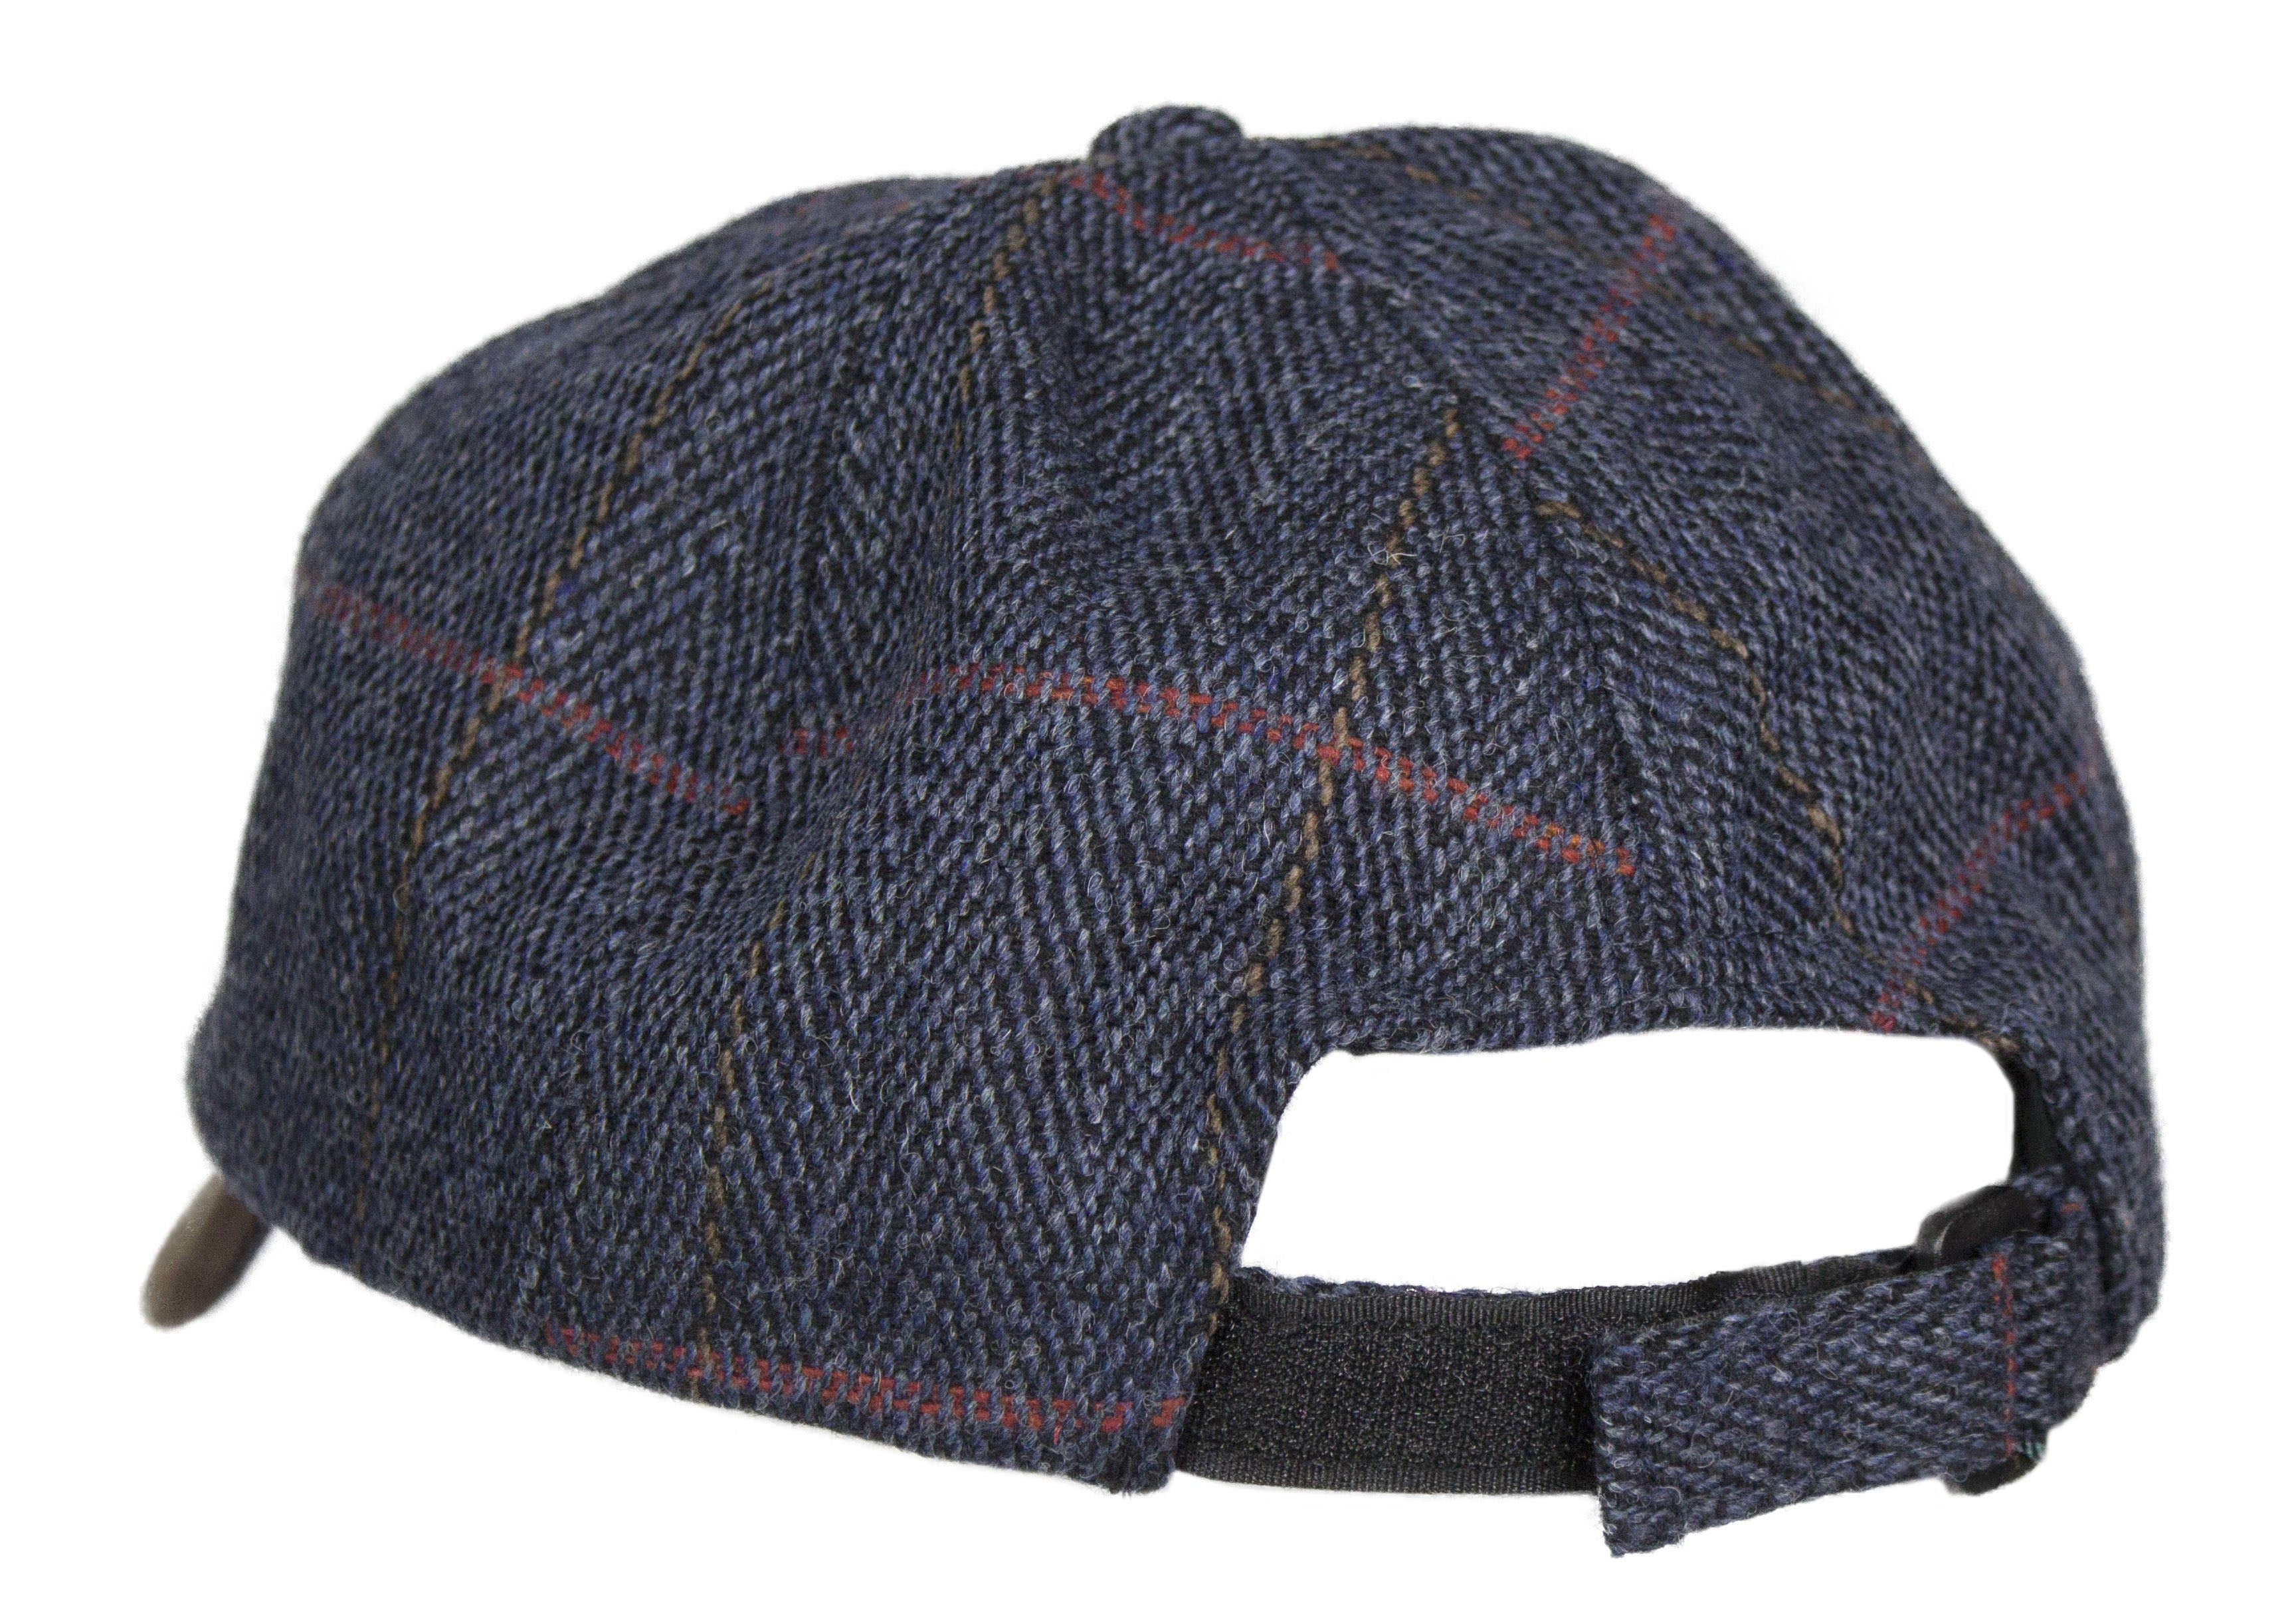 HW59 - Leather Peak Tweed Baseball Cap - NAVY - Oxford Blue